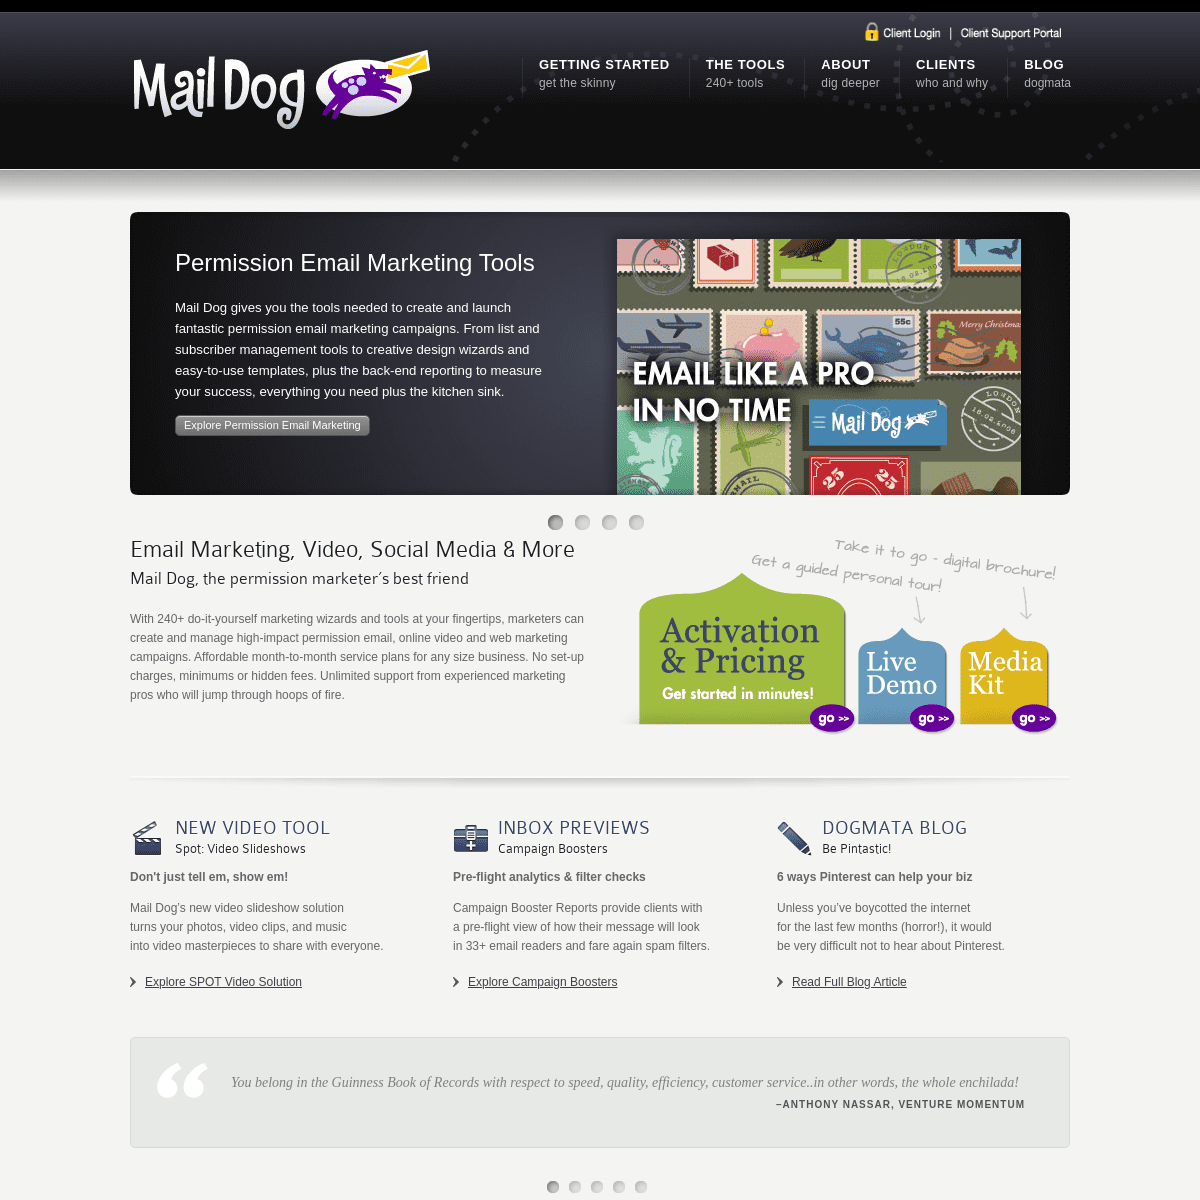 A complete backup of maildogmanager.com